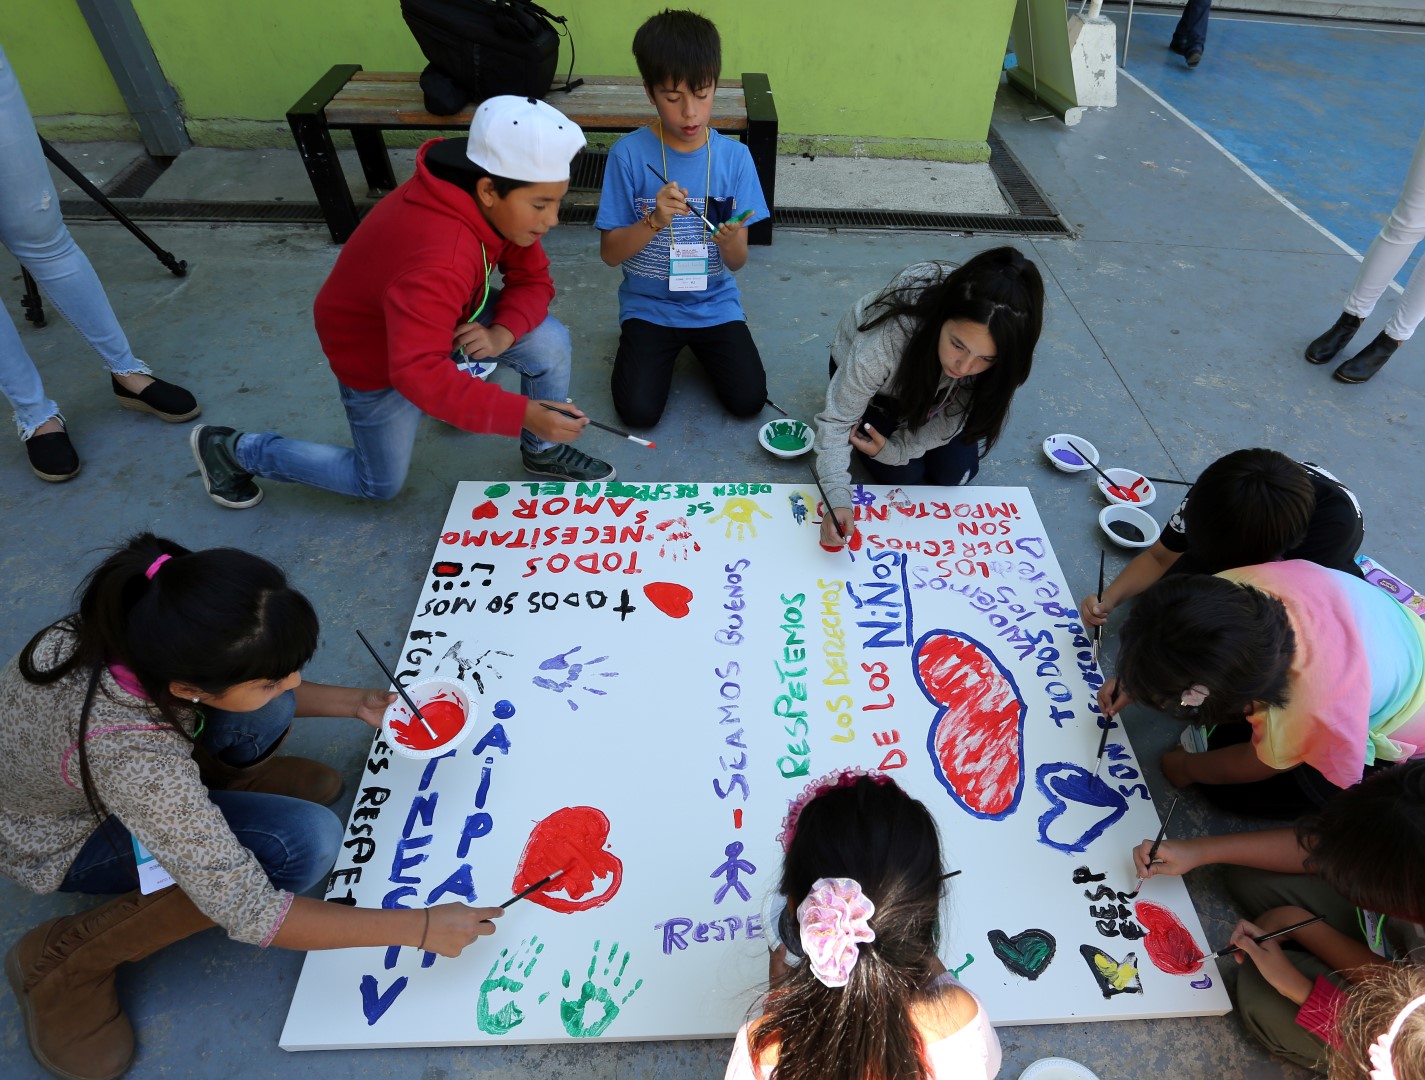 SERPAJ Chile analiza los avances y desafíos en materia de infancia con motivo del mes conmemorativo del Día de la Niñez